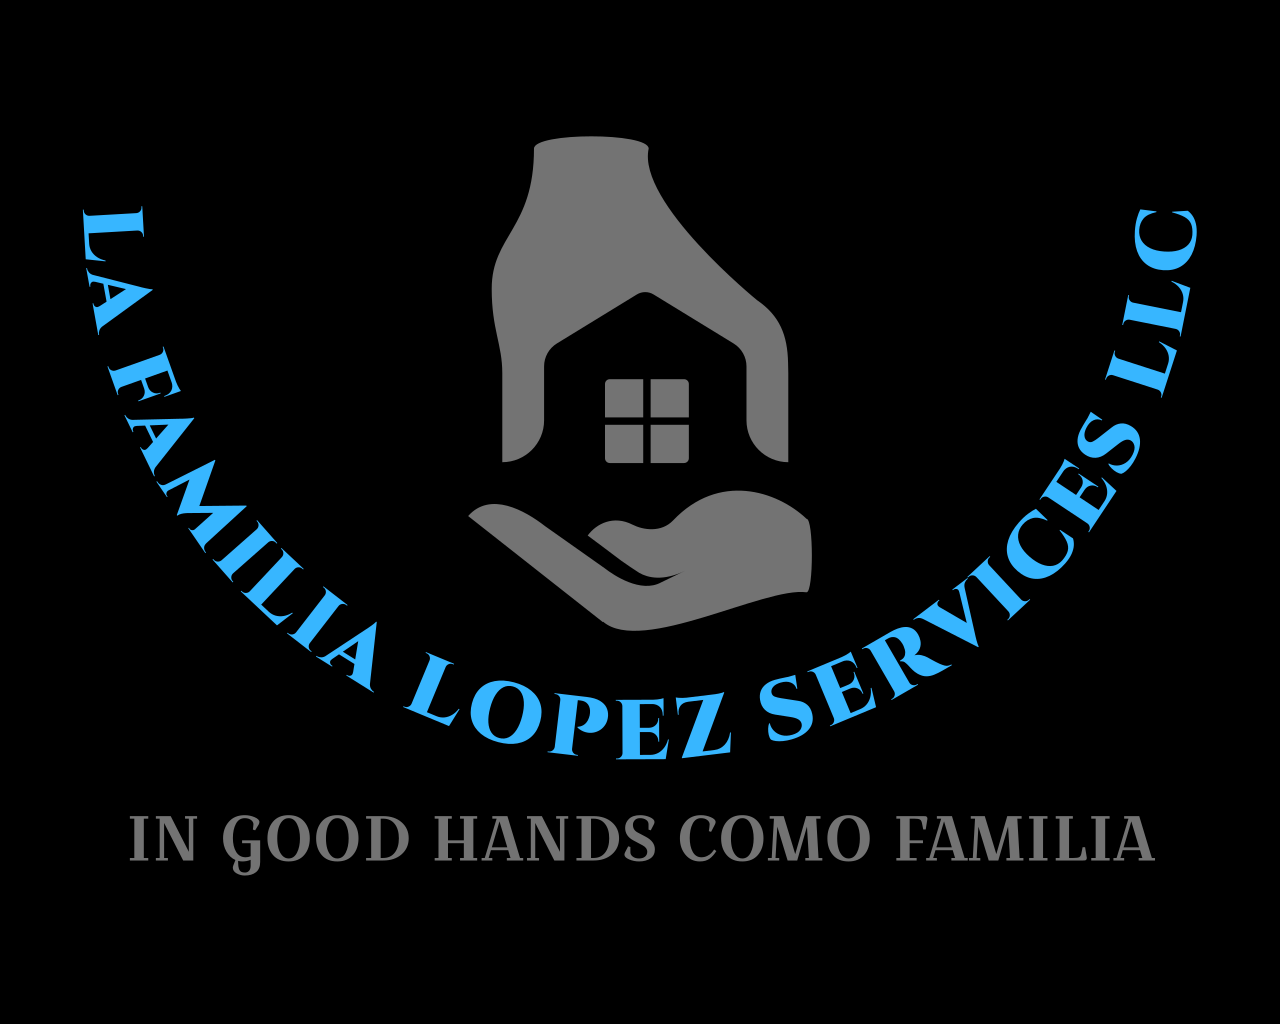 IN GOOD HANDS COMO FAMILIA, La Familia Lopez Services LLC's web page